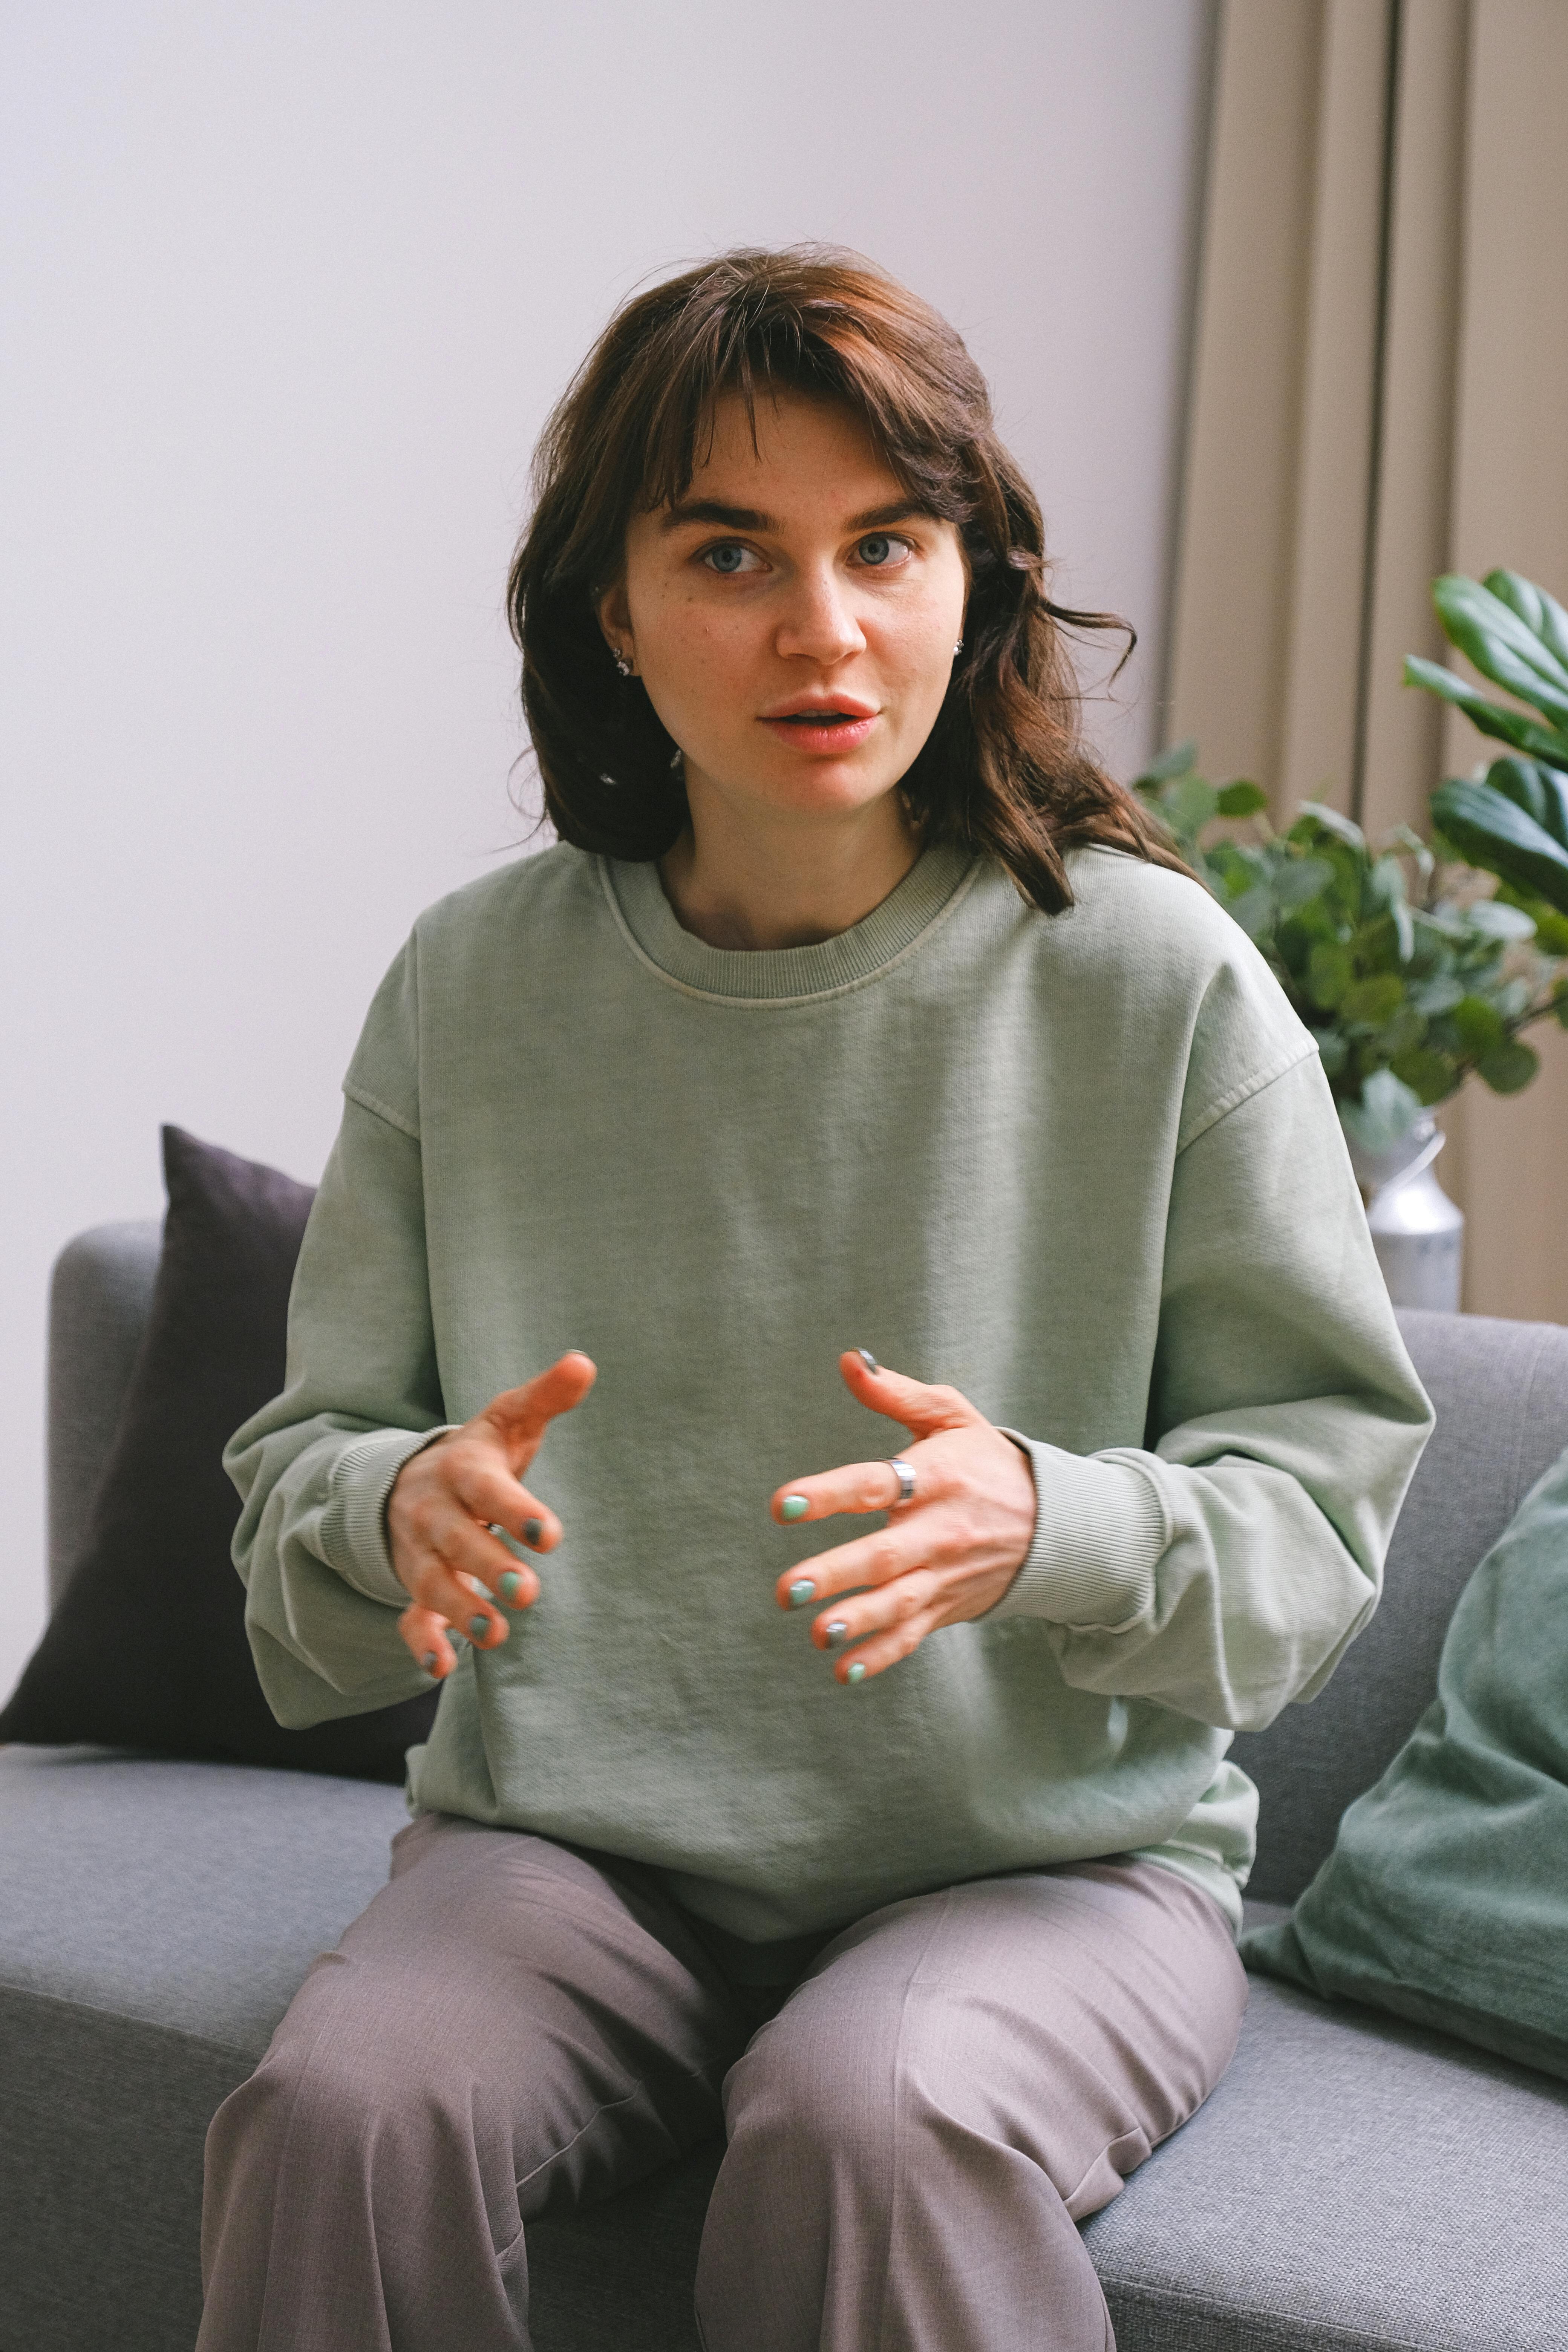 Eine junge Frau, die mit ihren Händen gestikuliert | Quelle: Pexels